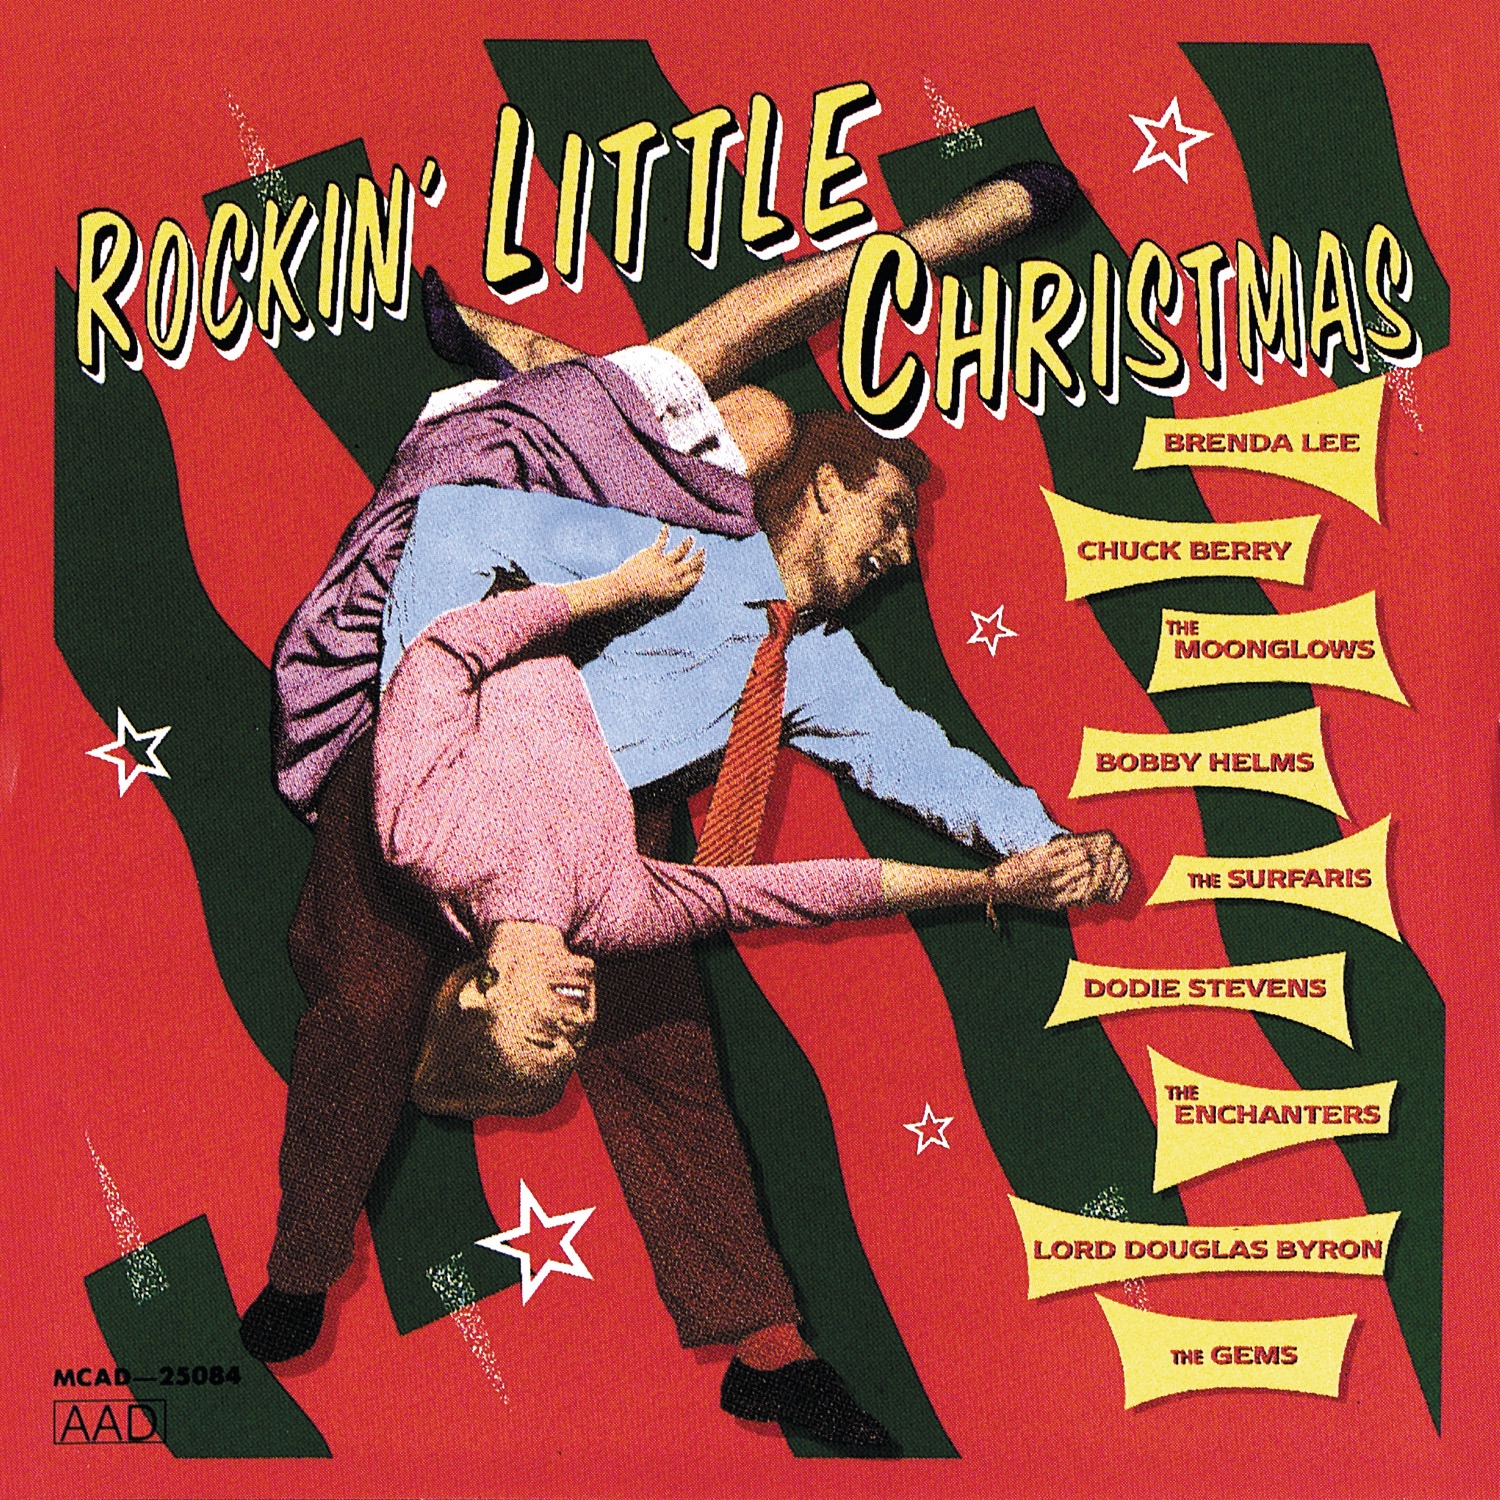 Brenda Lee - Rockin' Around the Christmas Tree - Single